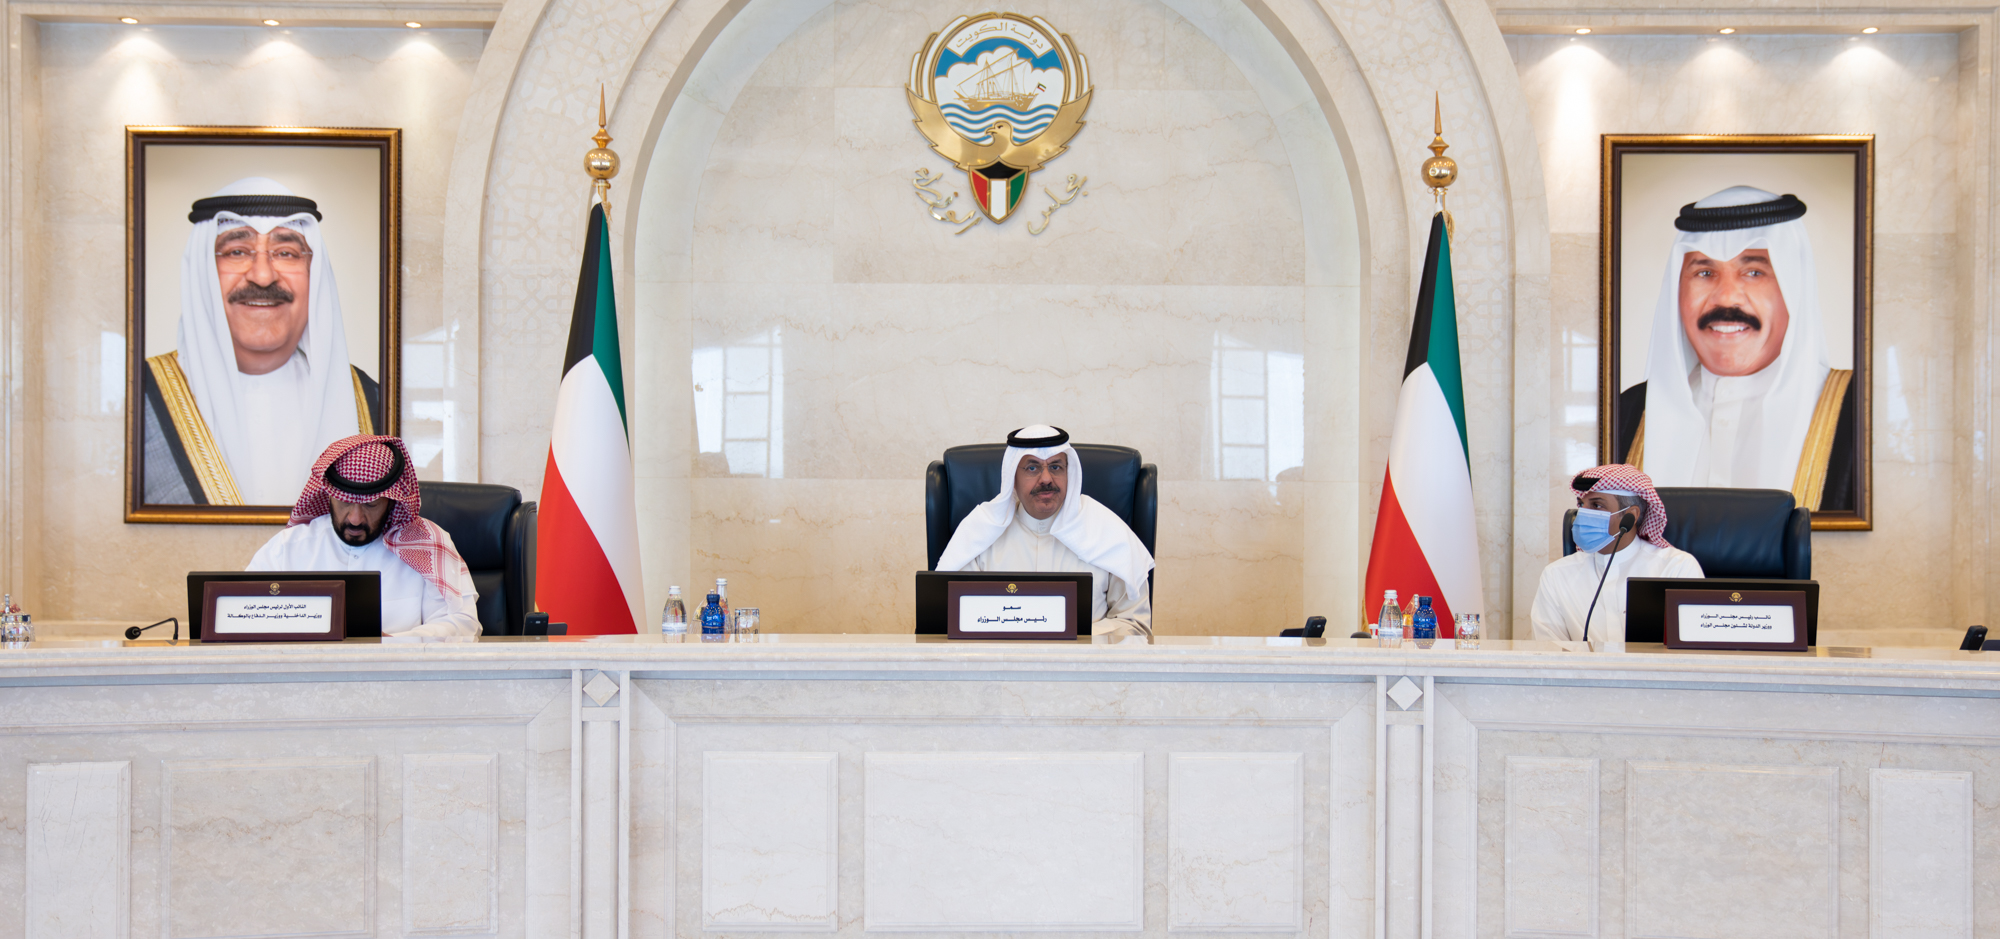 مجلس الوزراء: اتخاذ الإجراءات اللازمة لتحقيق المتطلبات الدولية في شأن (مكافحة غسل الأموال) تحضيرا  لعملية التقييم المقبل لدولة الكويت